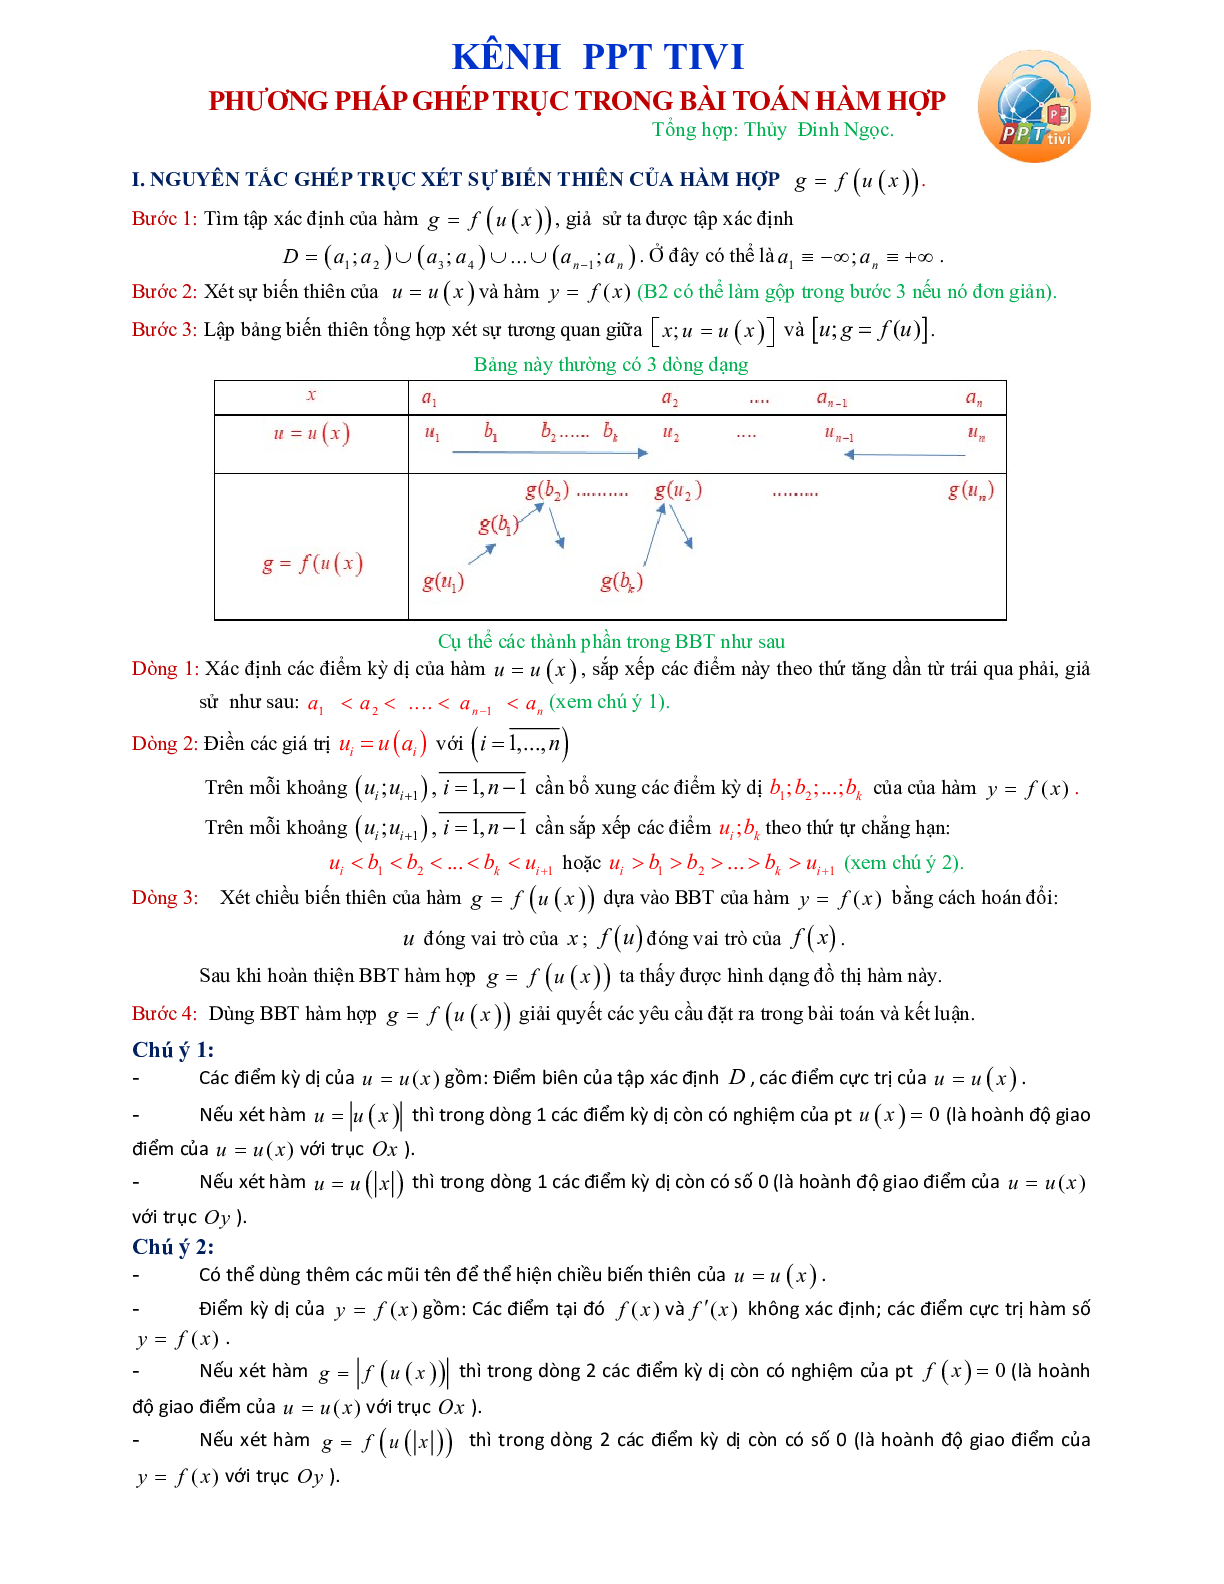 Phương pháp ghép trục trong bài toán hàm hợp (trang 1)